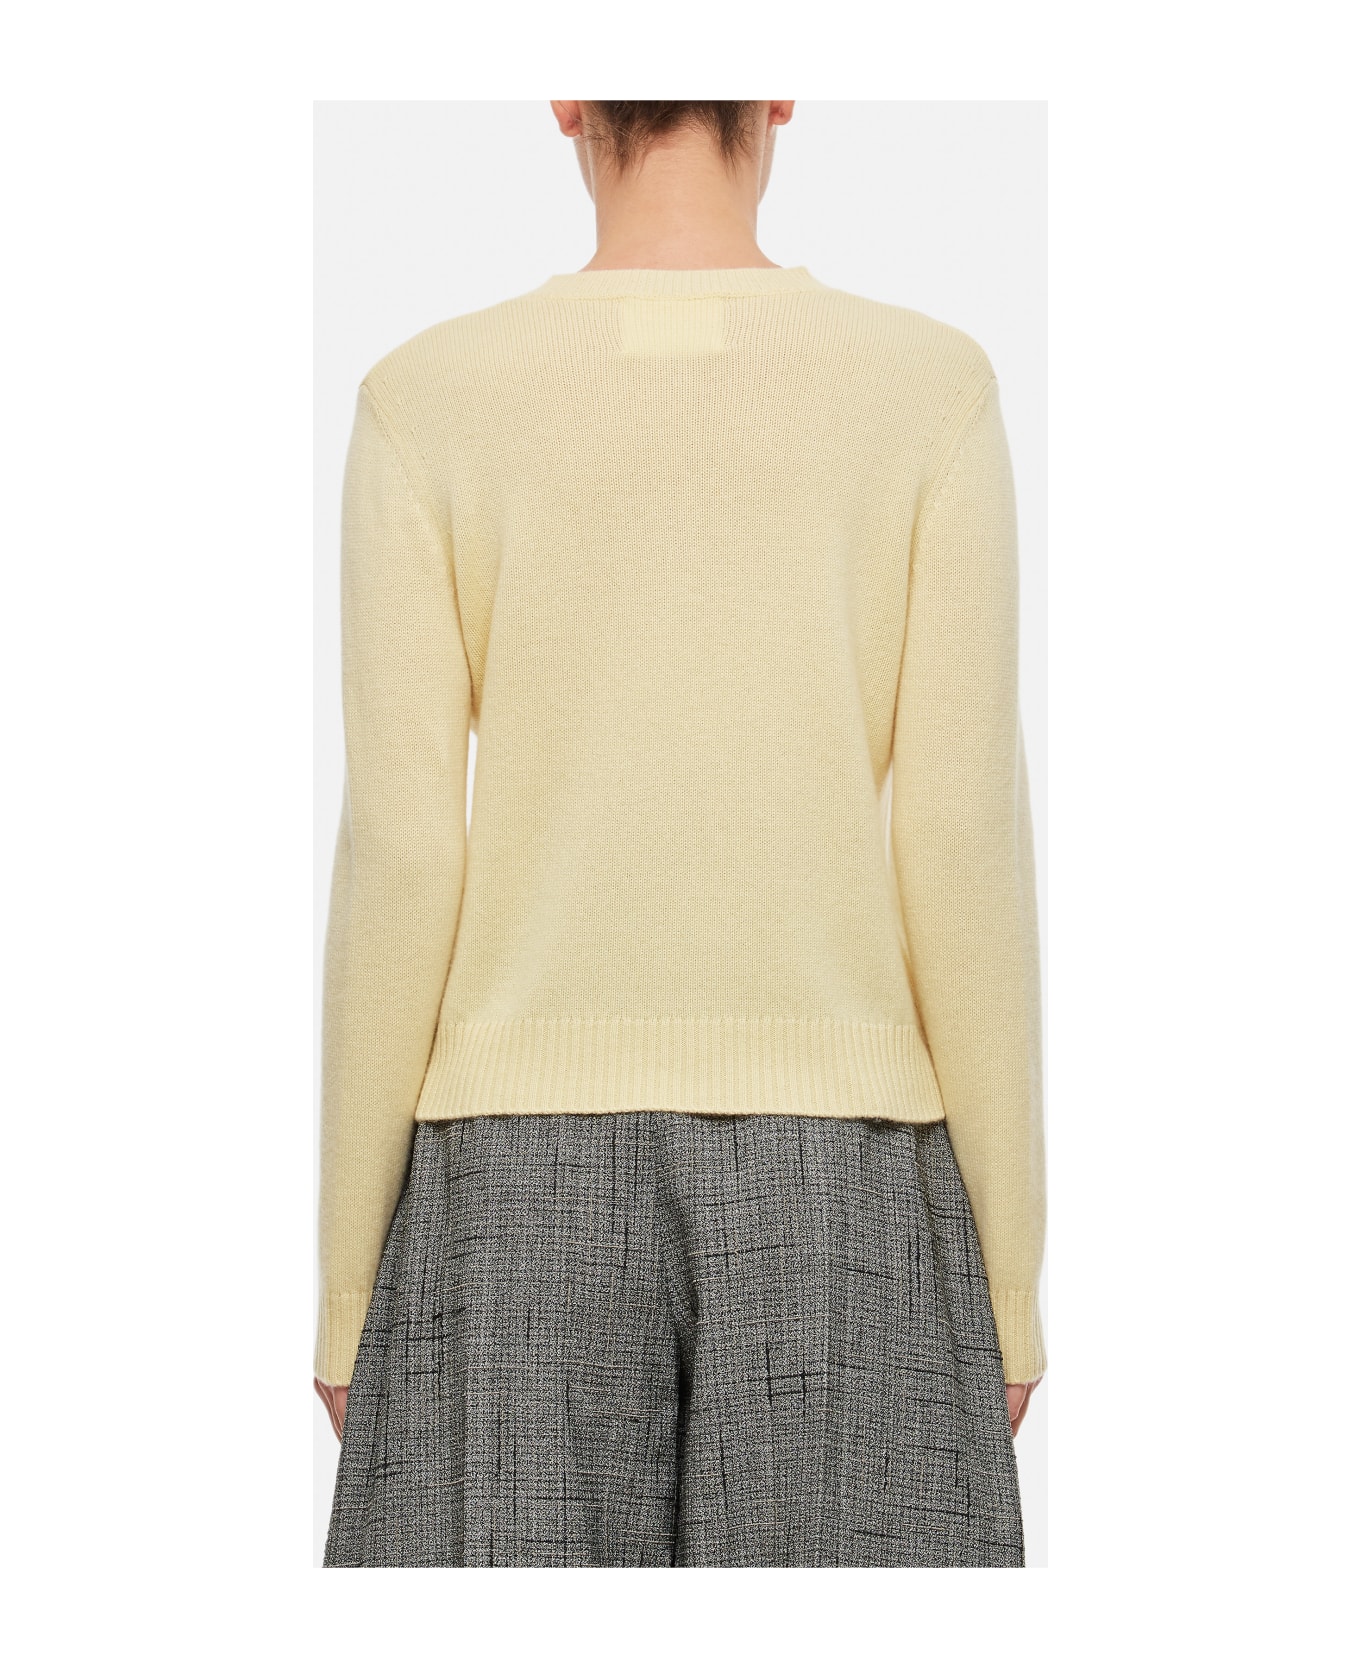 Lisa Yang Mable Sweater - Beige ニットウェア